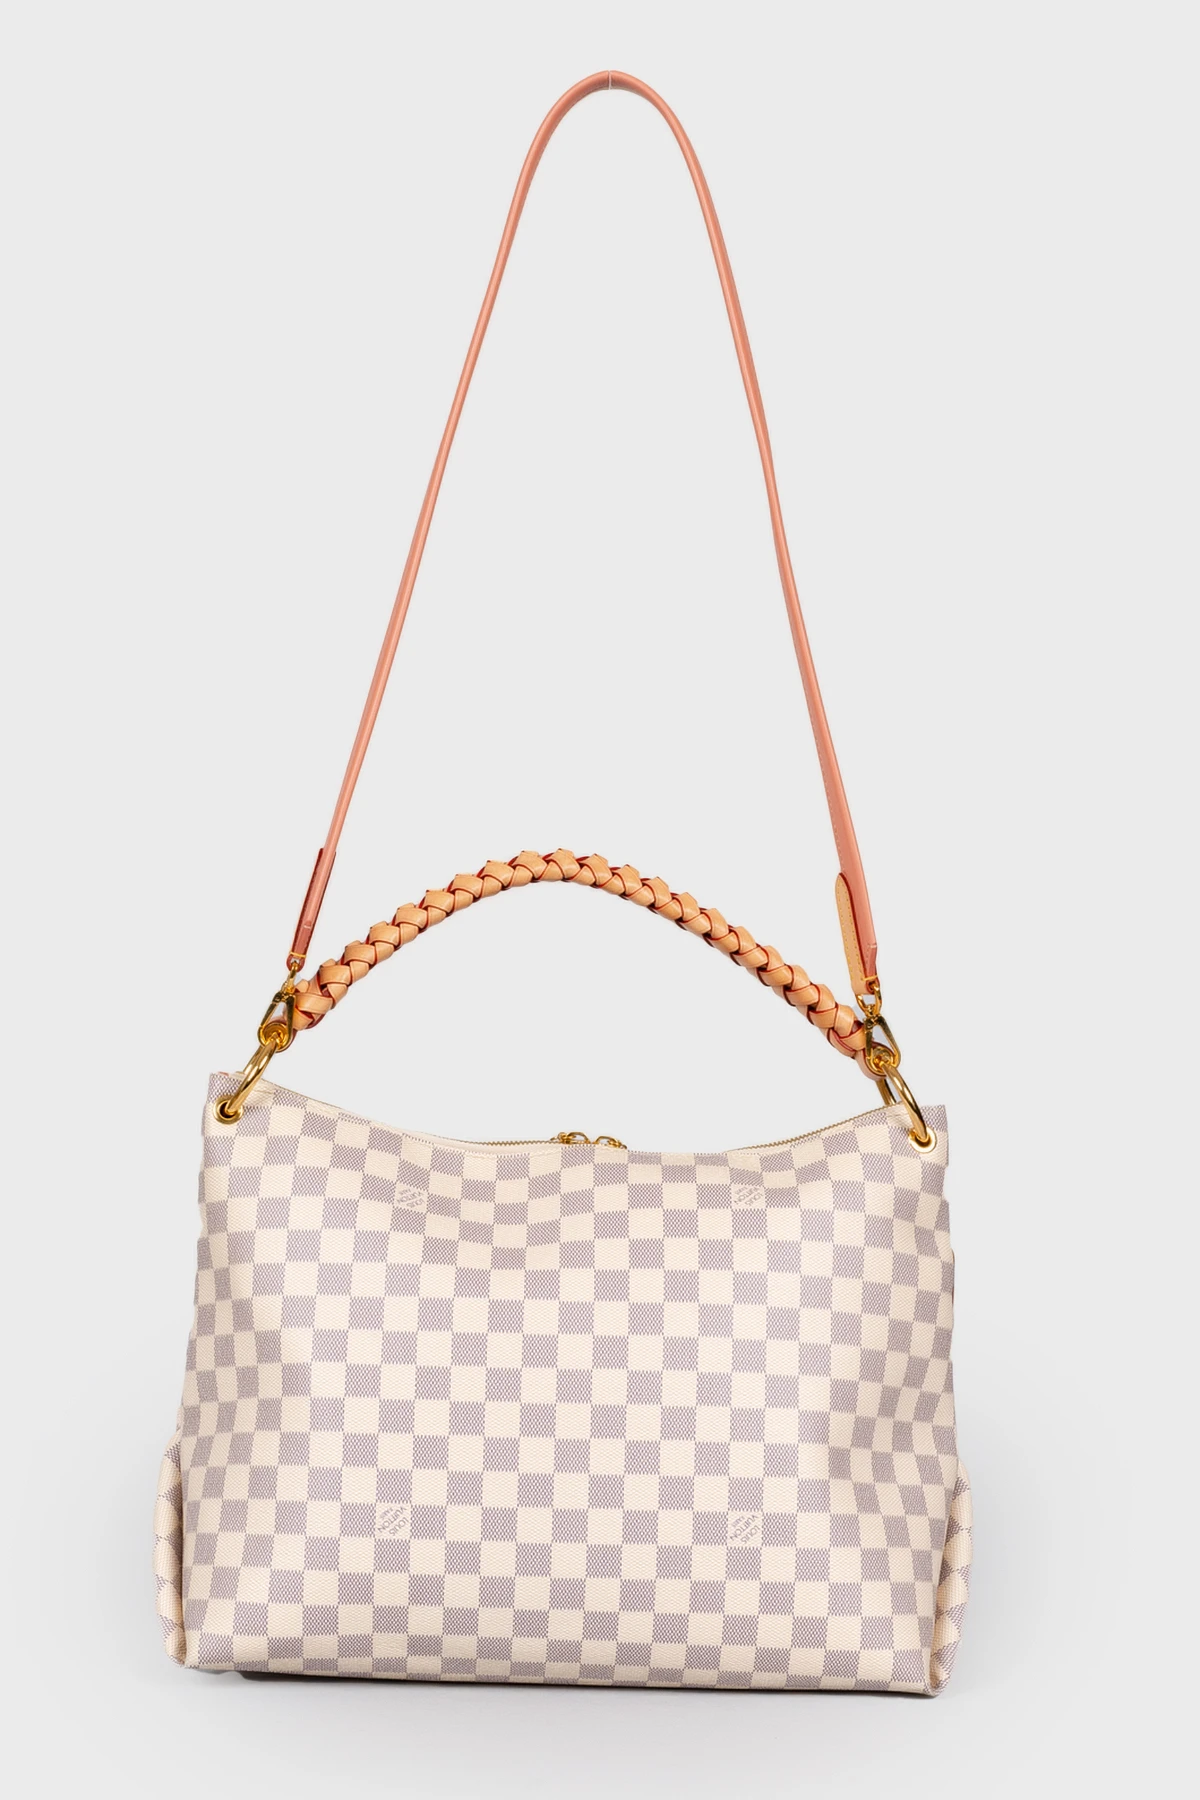 Louis Vuitton Artsy Damier Azur Canvas bag - ReOriginal